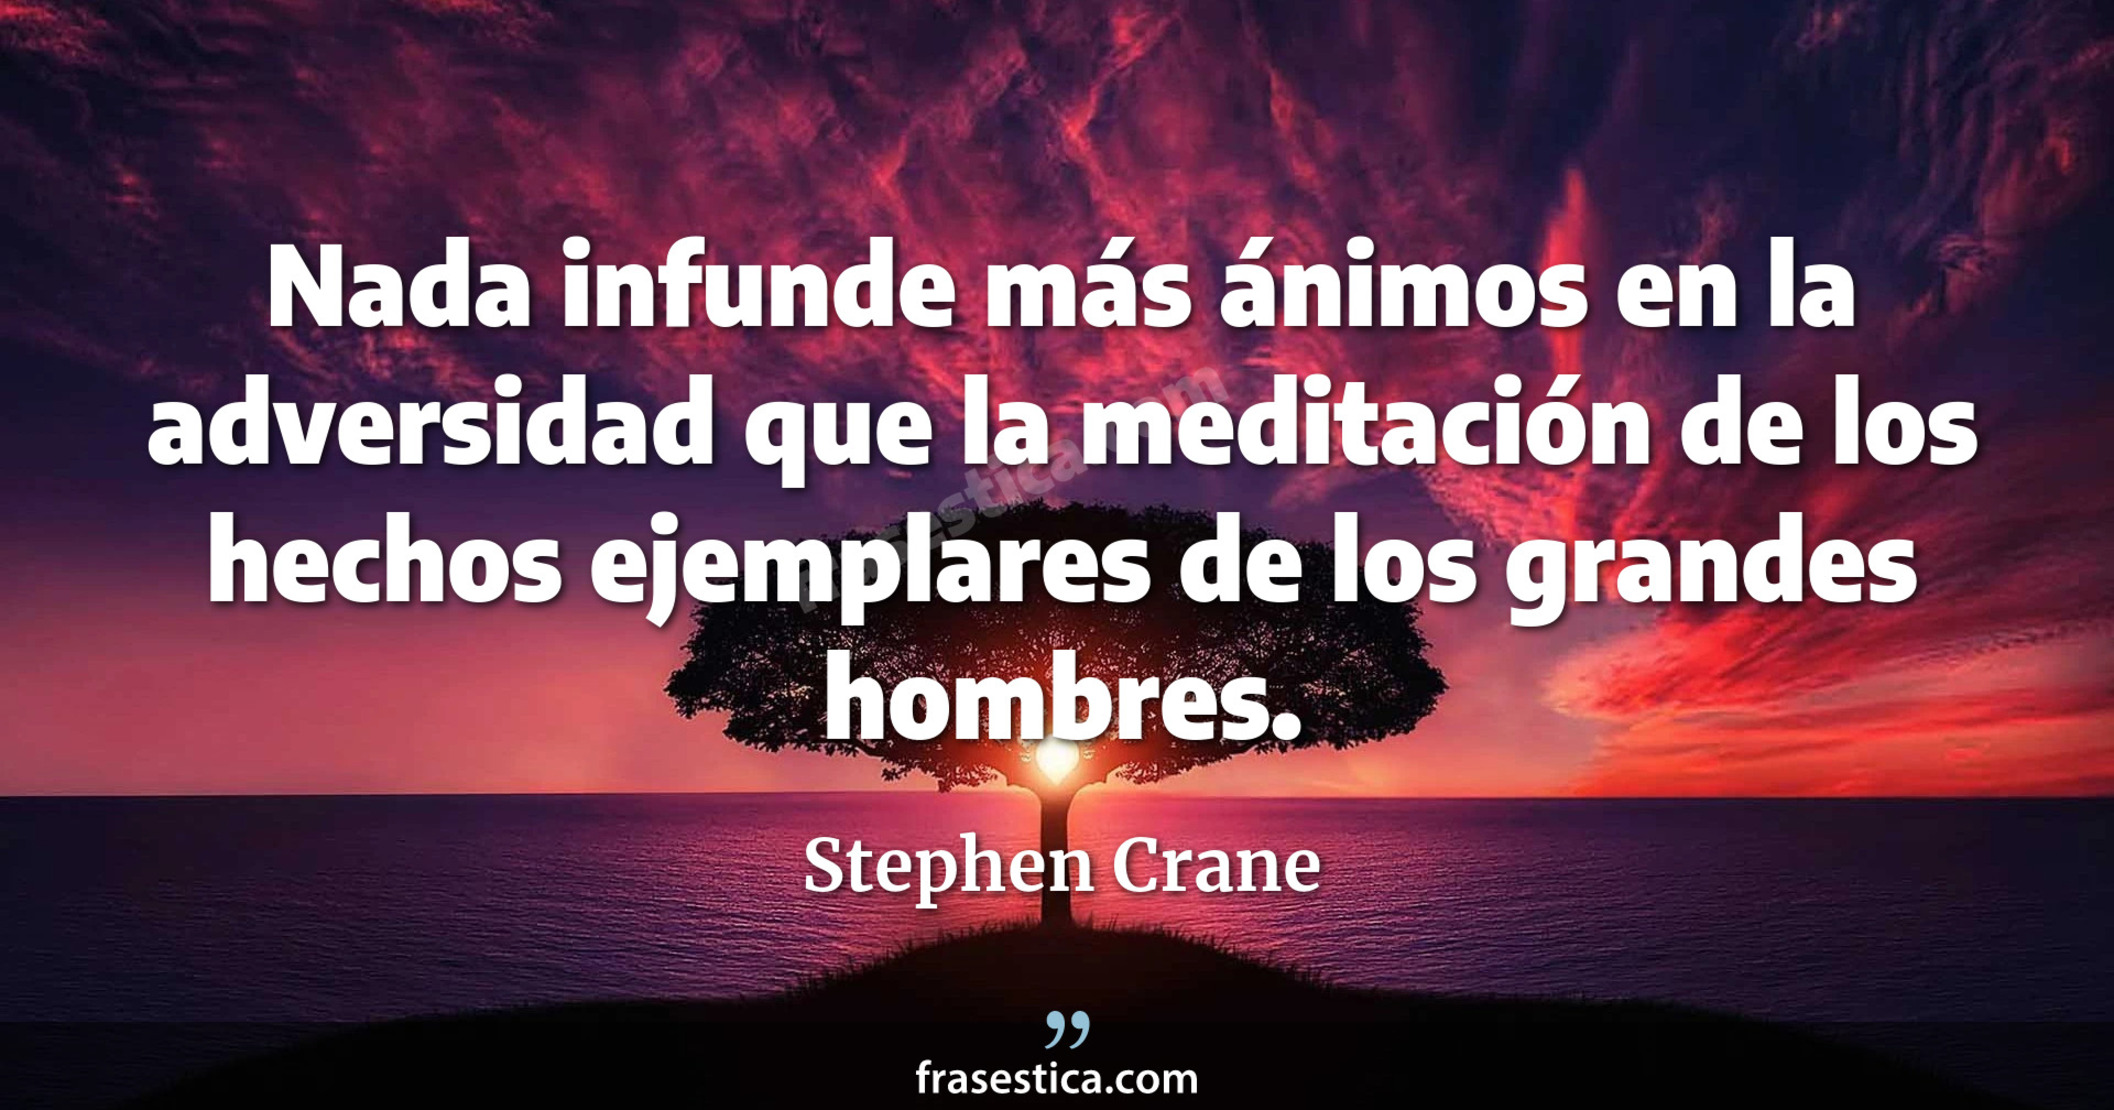 Nada infunde más ánimos en la adversidad que la meditación de los hechos ejemplares de los grandes hombres. - Stephen Crane